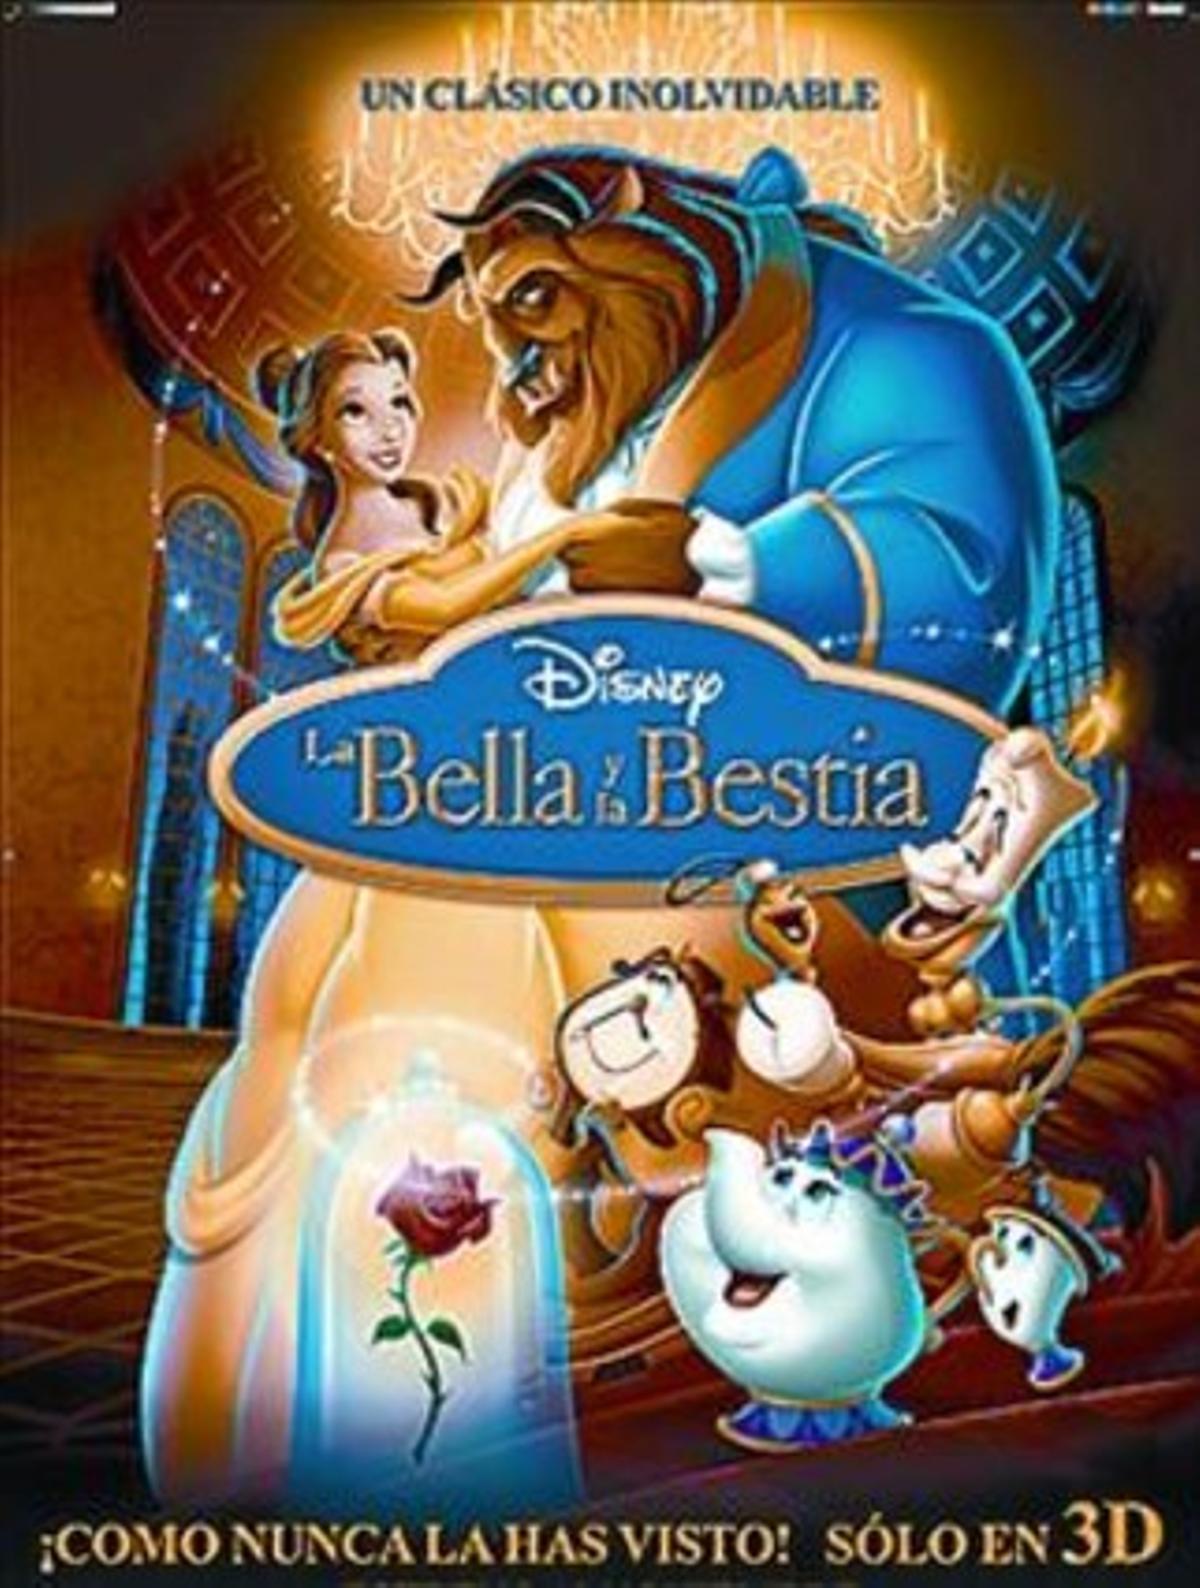 La Bella y la Bestia - Crítica de la película animada